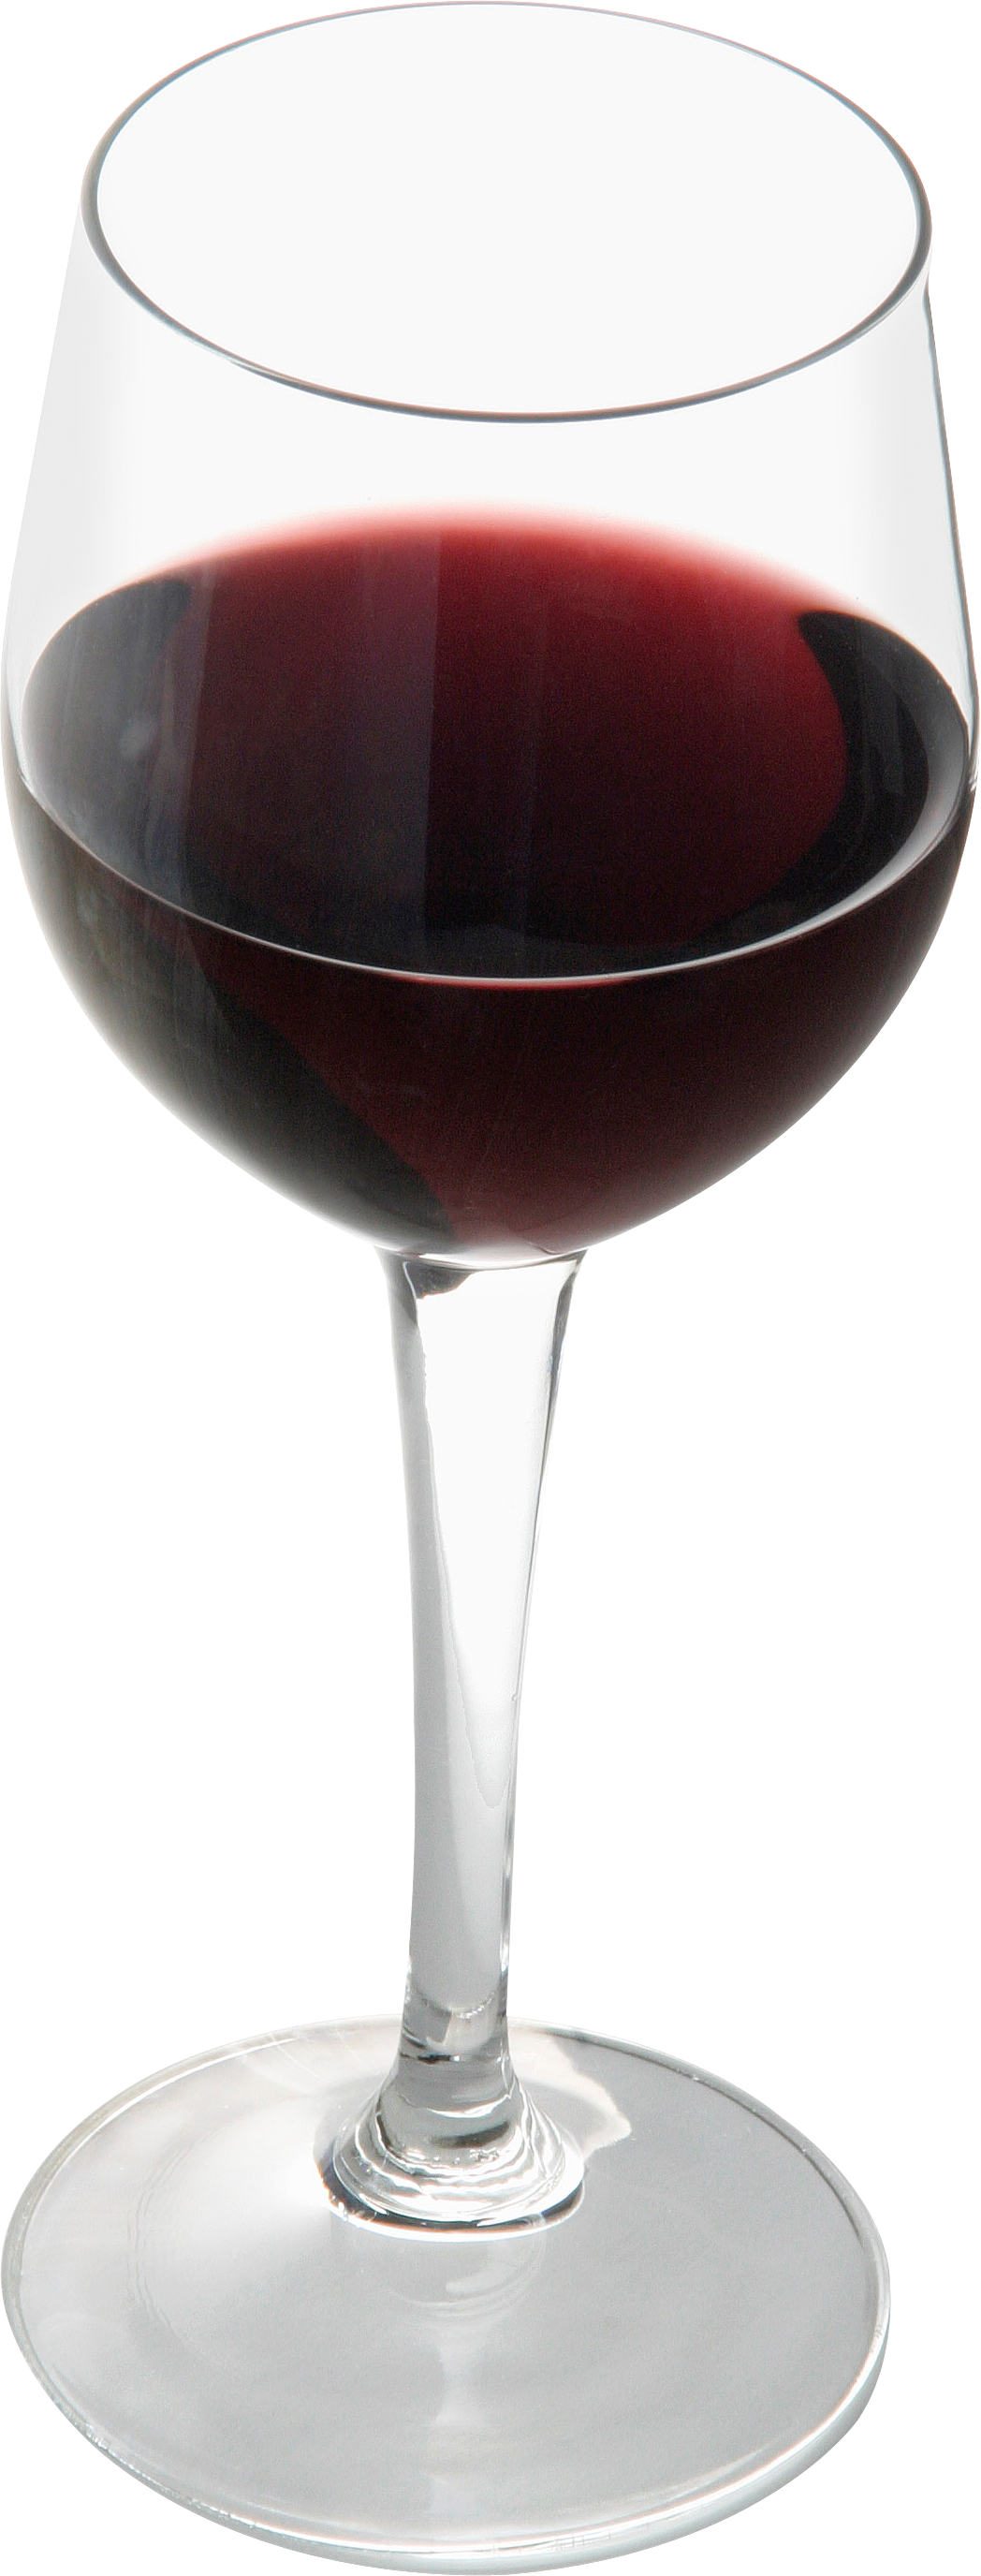 ゴブレットグラス、赤ワイングラス